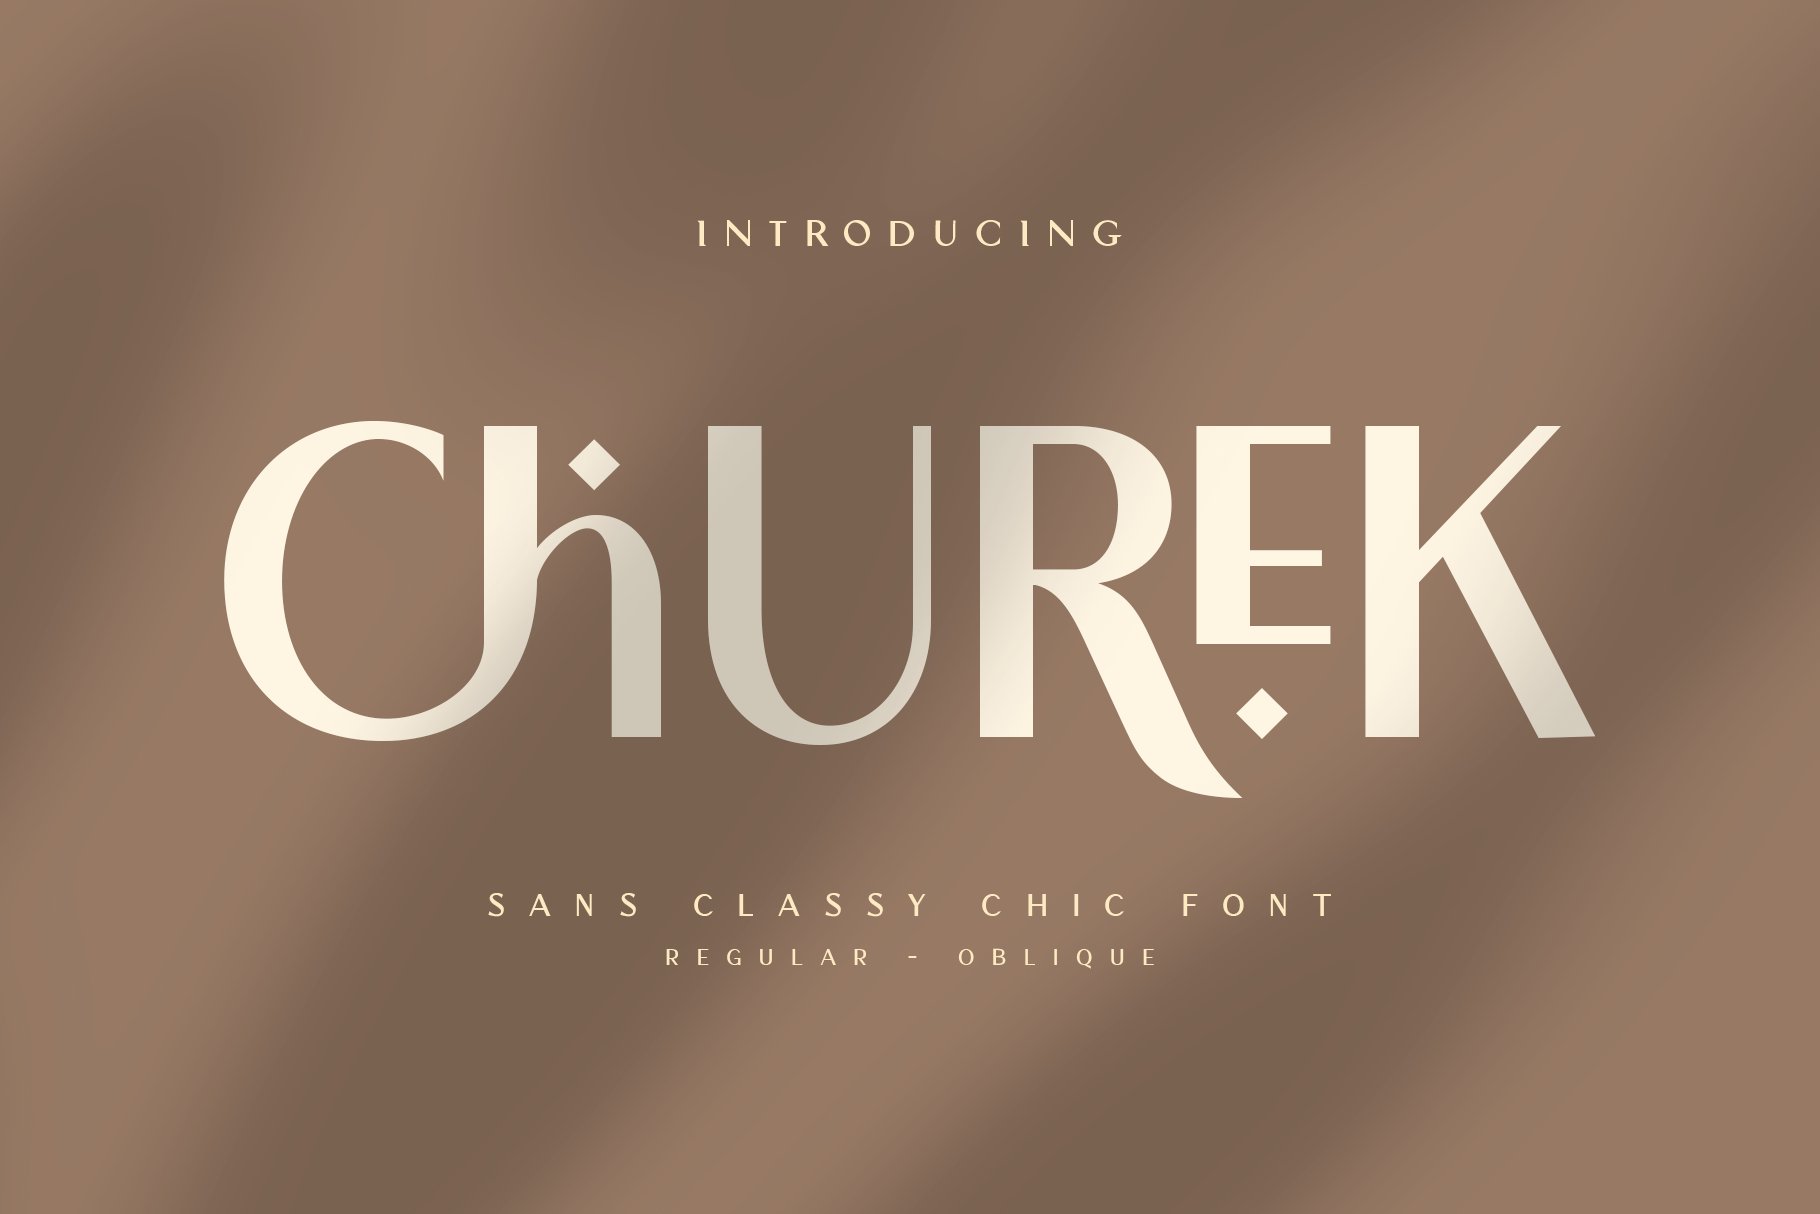 Beispiel einer Churek-Schriftart